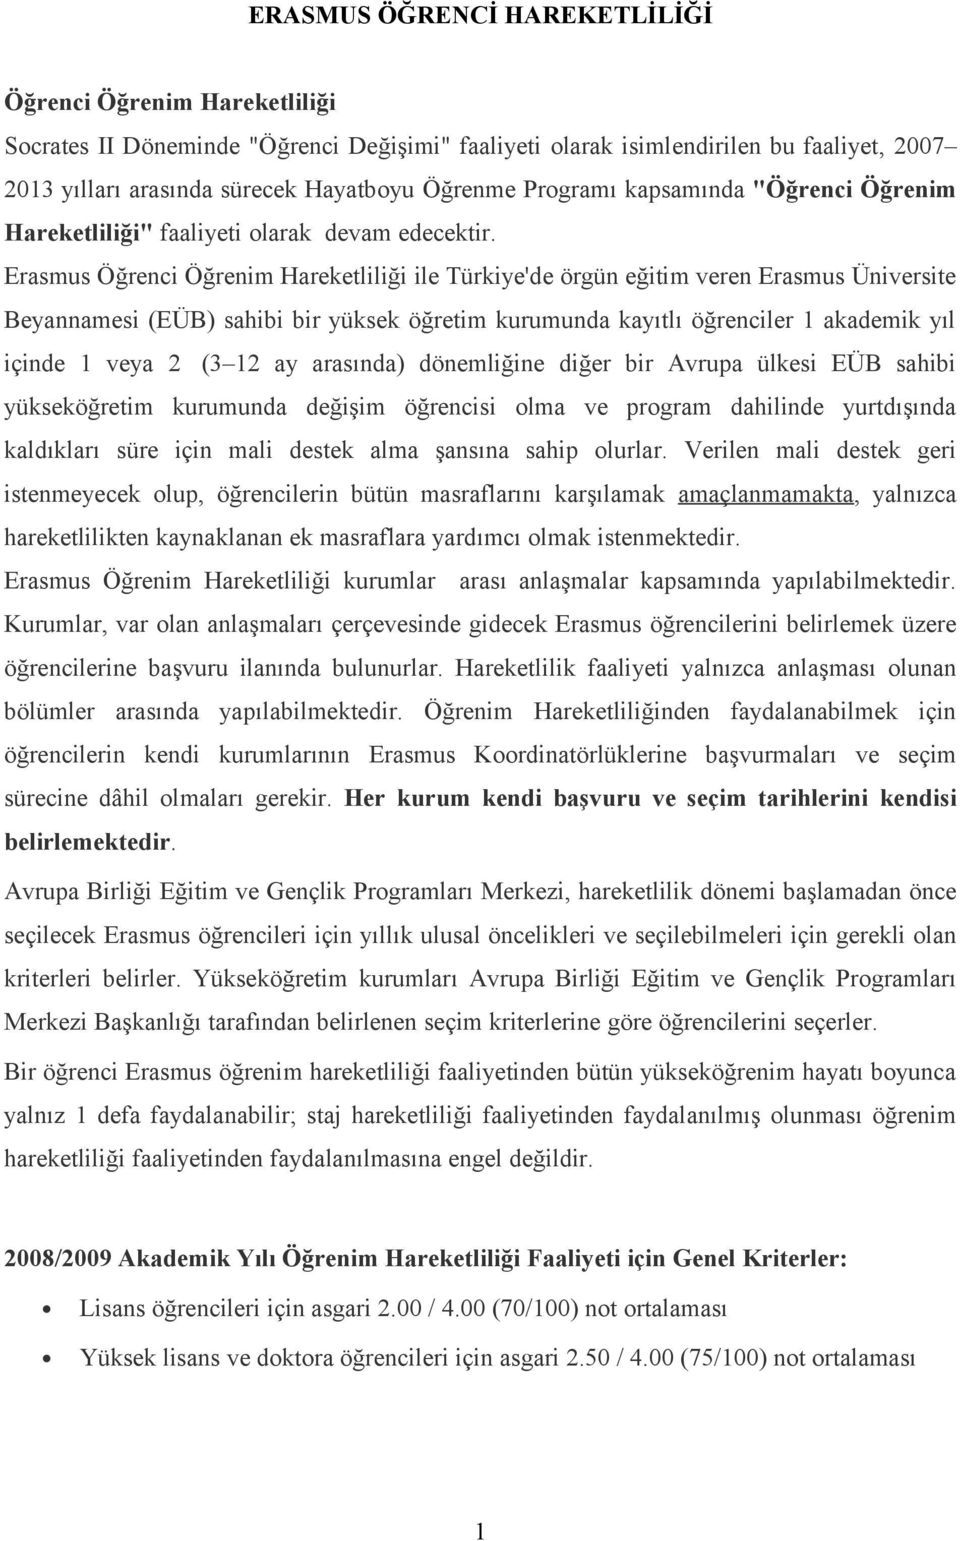 Erasmus Öğrenci Öğrenim Hareketliliği ile Türkiye'de örgün eğitim veren Erasmus Üniversite Beyannamesi (EÜB) sahibi bir yüksek öğretim kurumunda kayıtlı öğrenciler 1 akademik yıl içinde 1 veya 2 (3